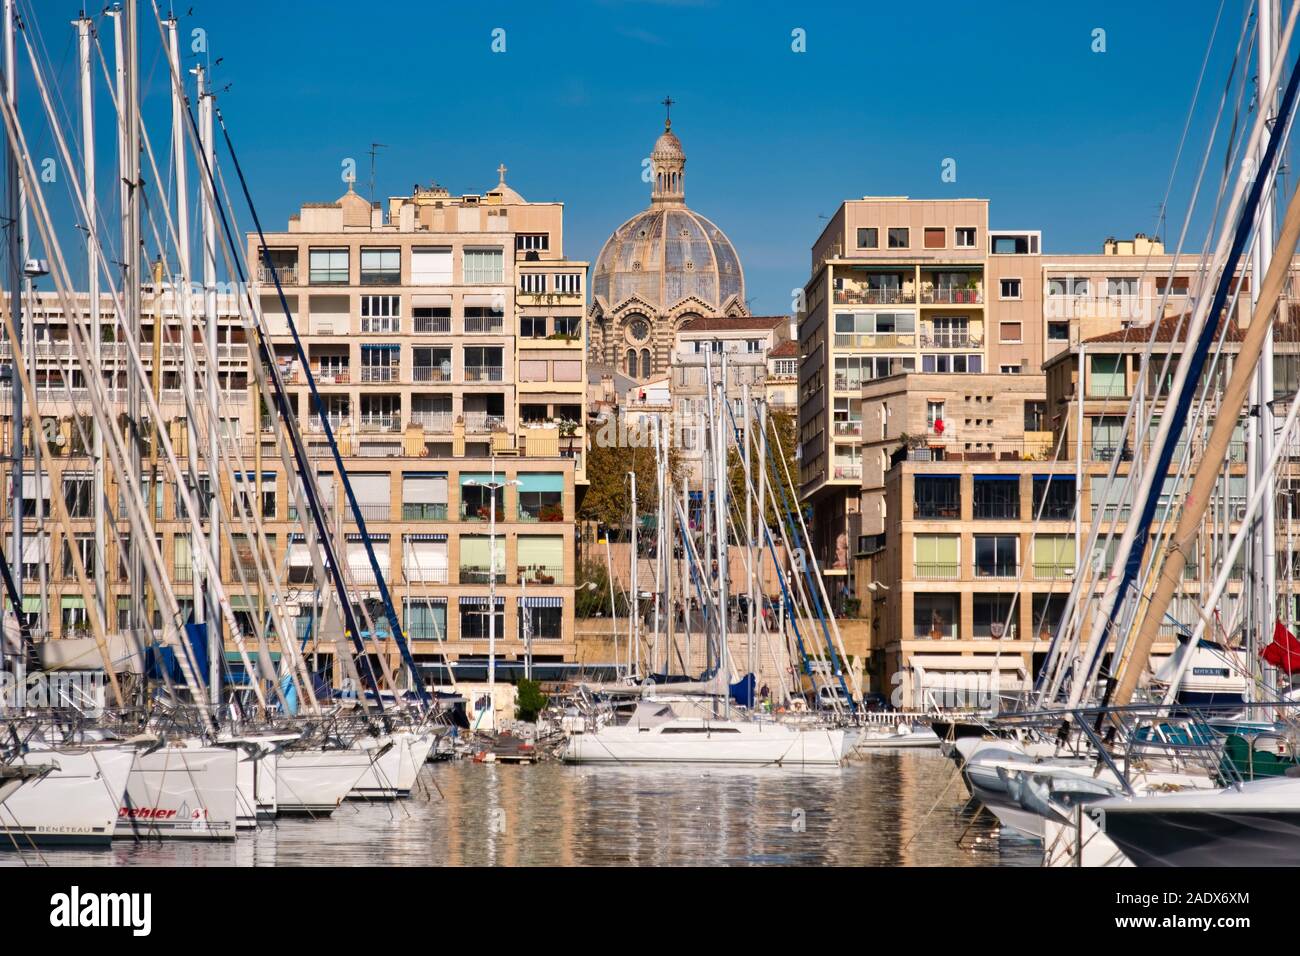 Bateaux à voile au Vieux Port Vieux port de Marseille, France, Europe Banque D'Images